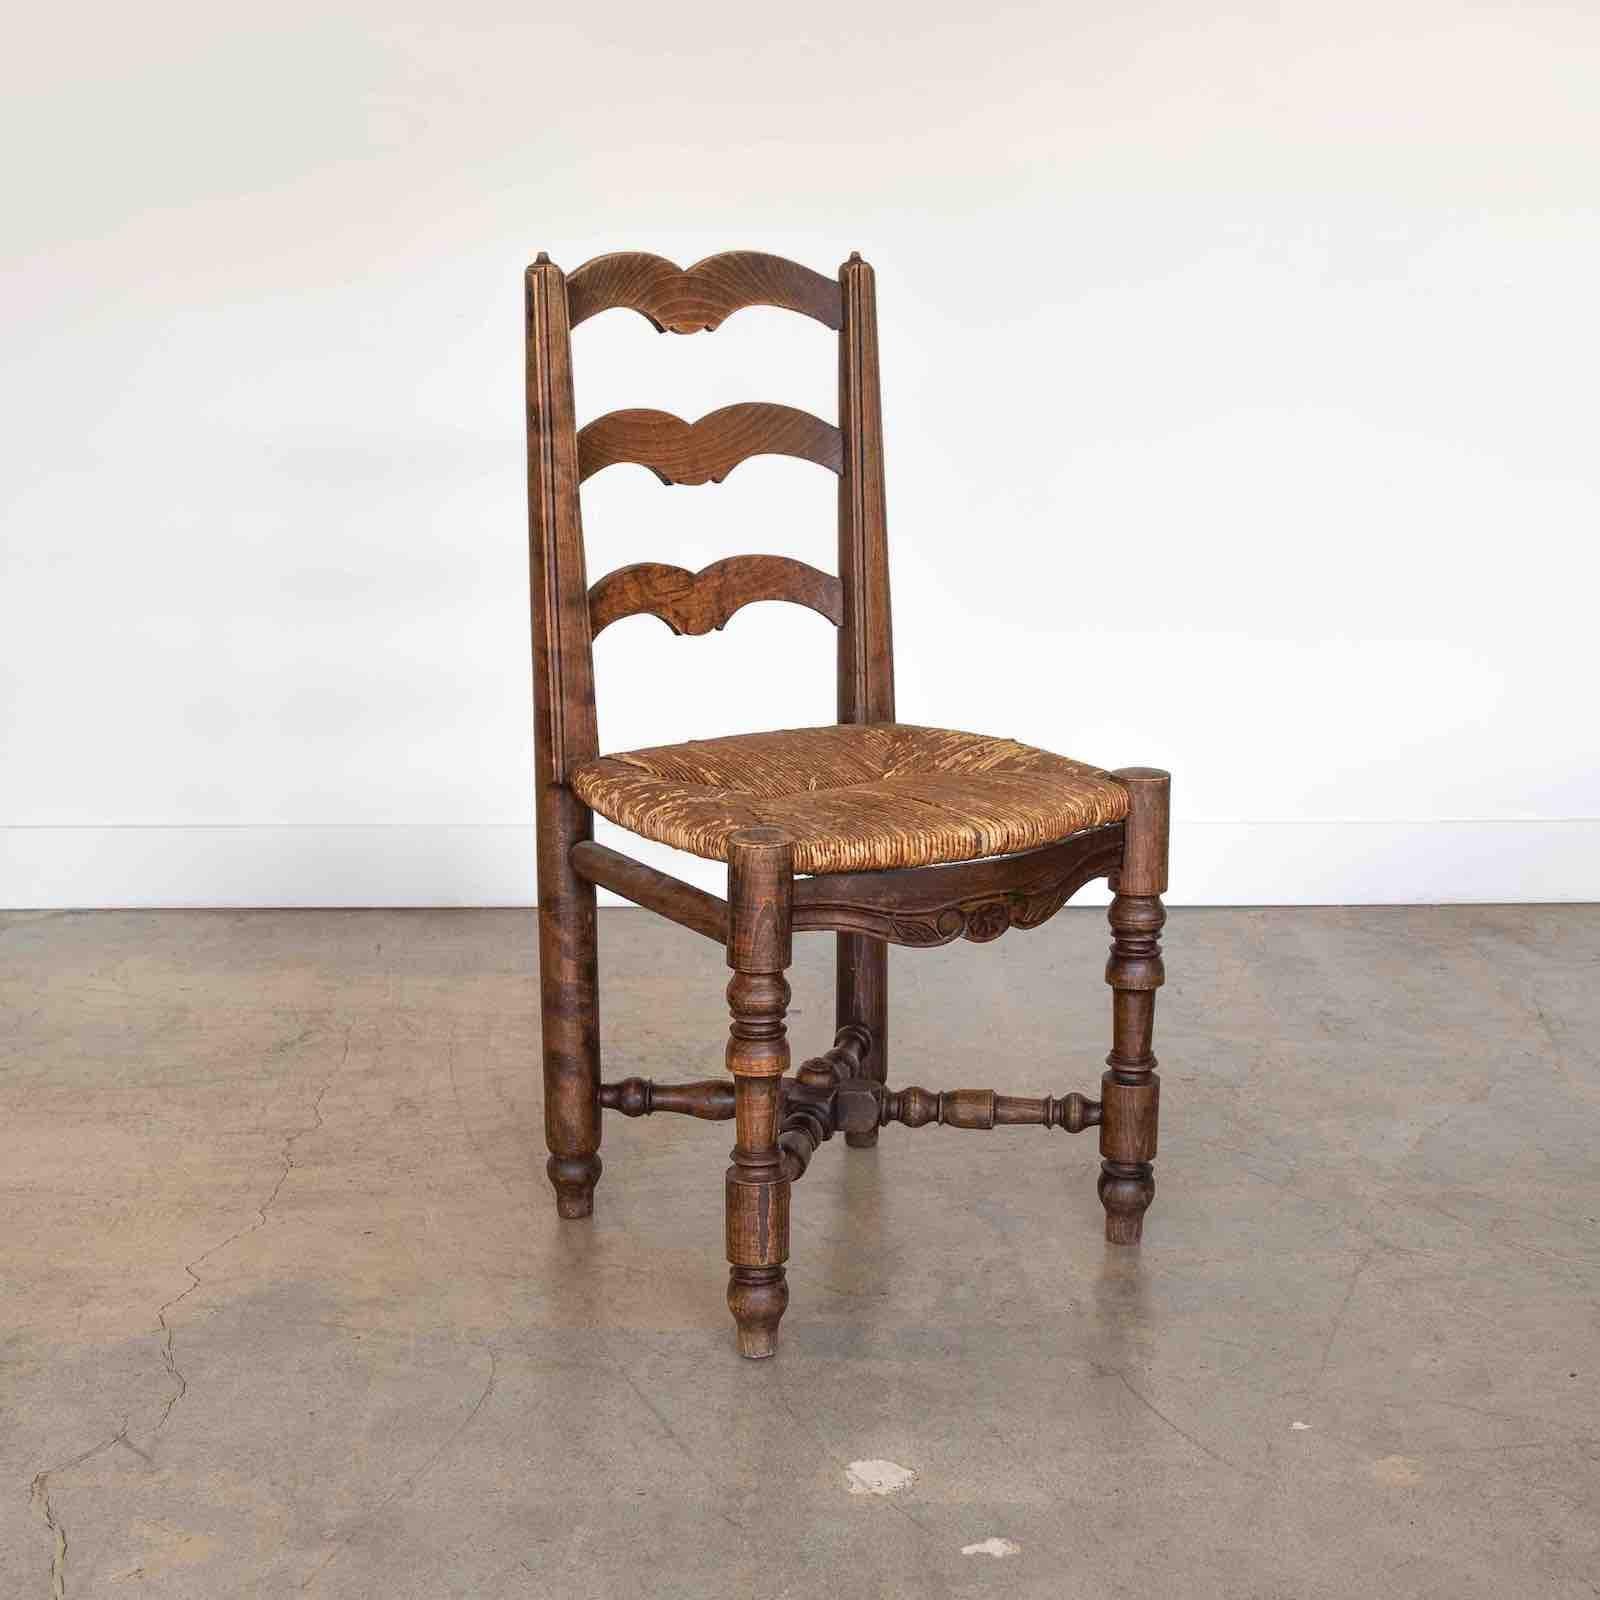 Magnifique chaise en bois sculpté, France, années 1940. Pieds en bois sculpté et cadre en bois avec des détails en forme de volutes. Le siège d'origine en jonc tressé et la finition en bois d'origine présentent une grande ancienneté et patine.